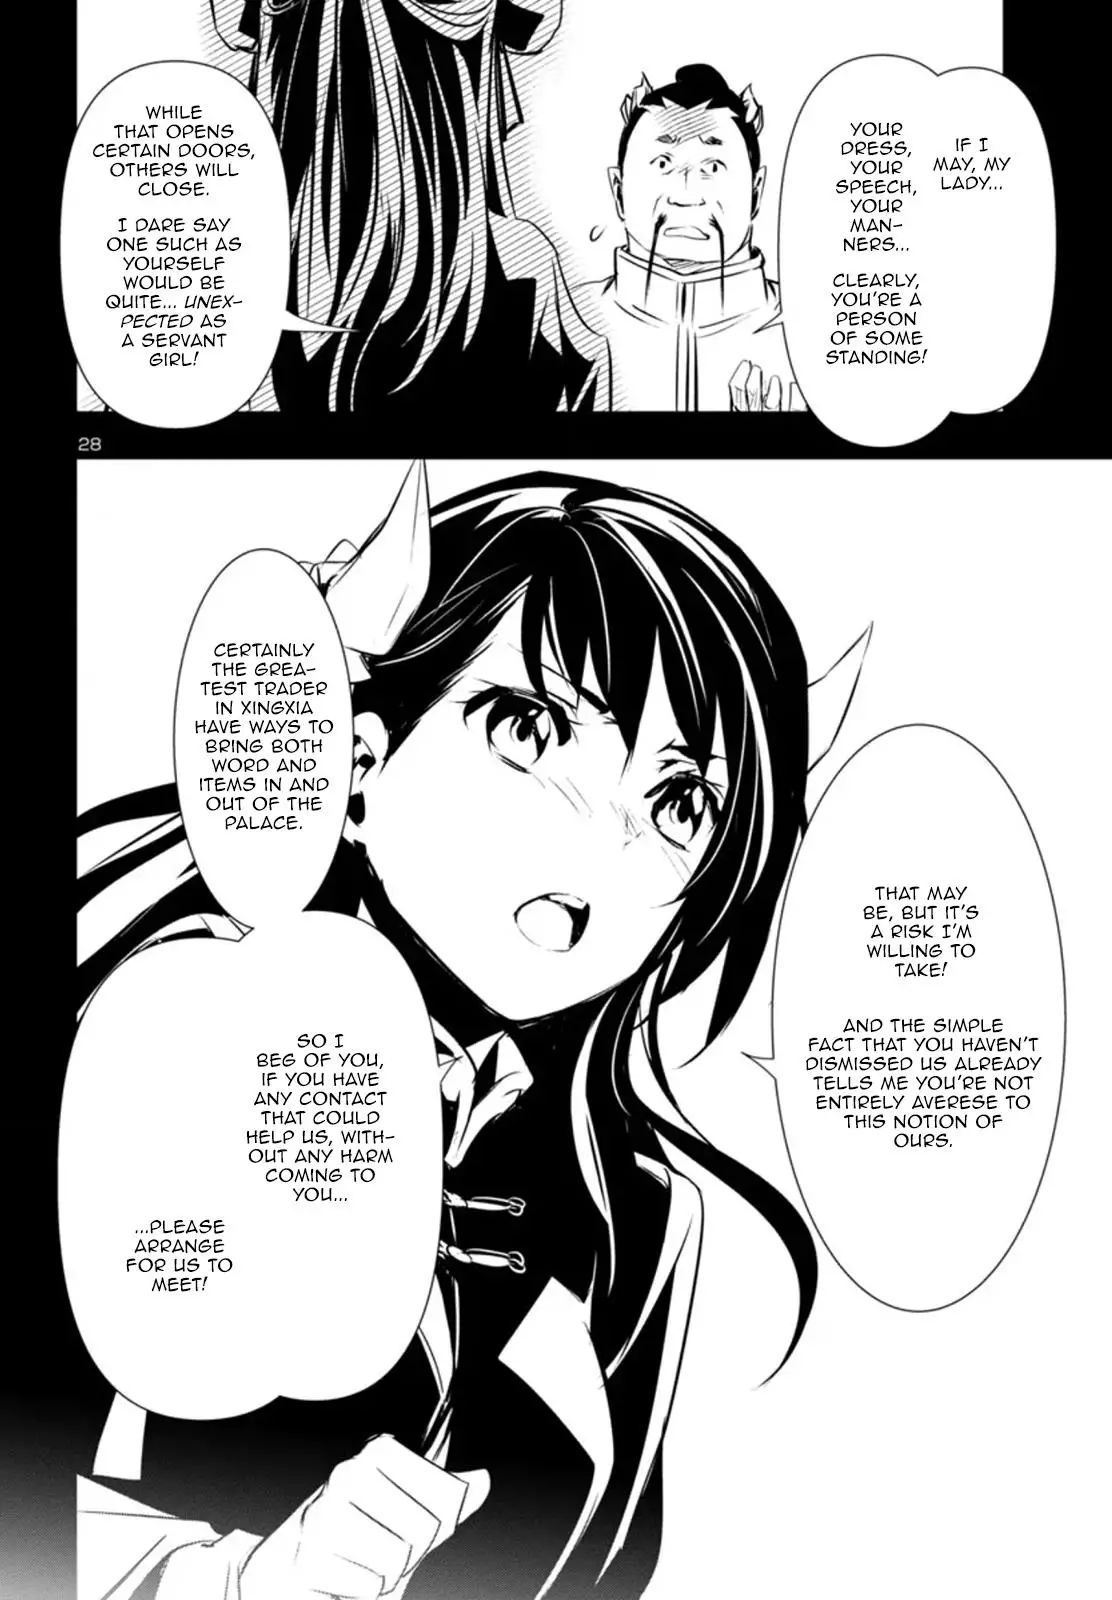 Shinju no Nectar - 80 page 29-65f0cc62